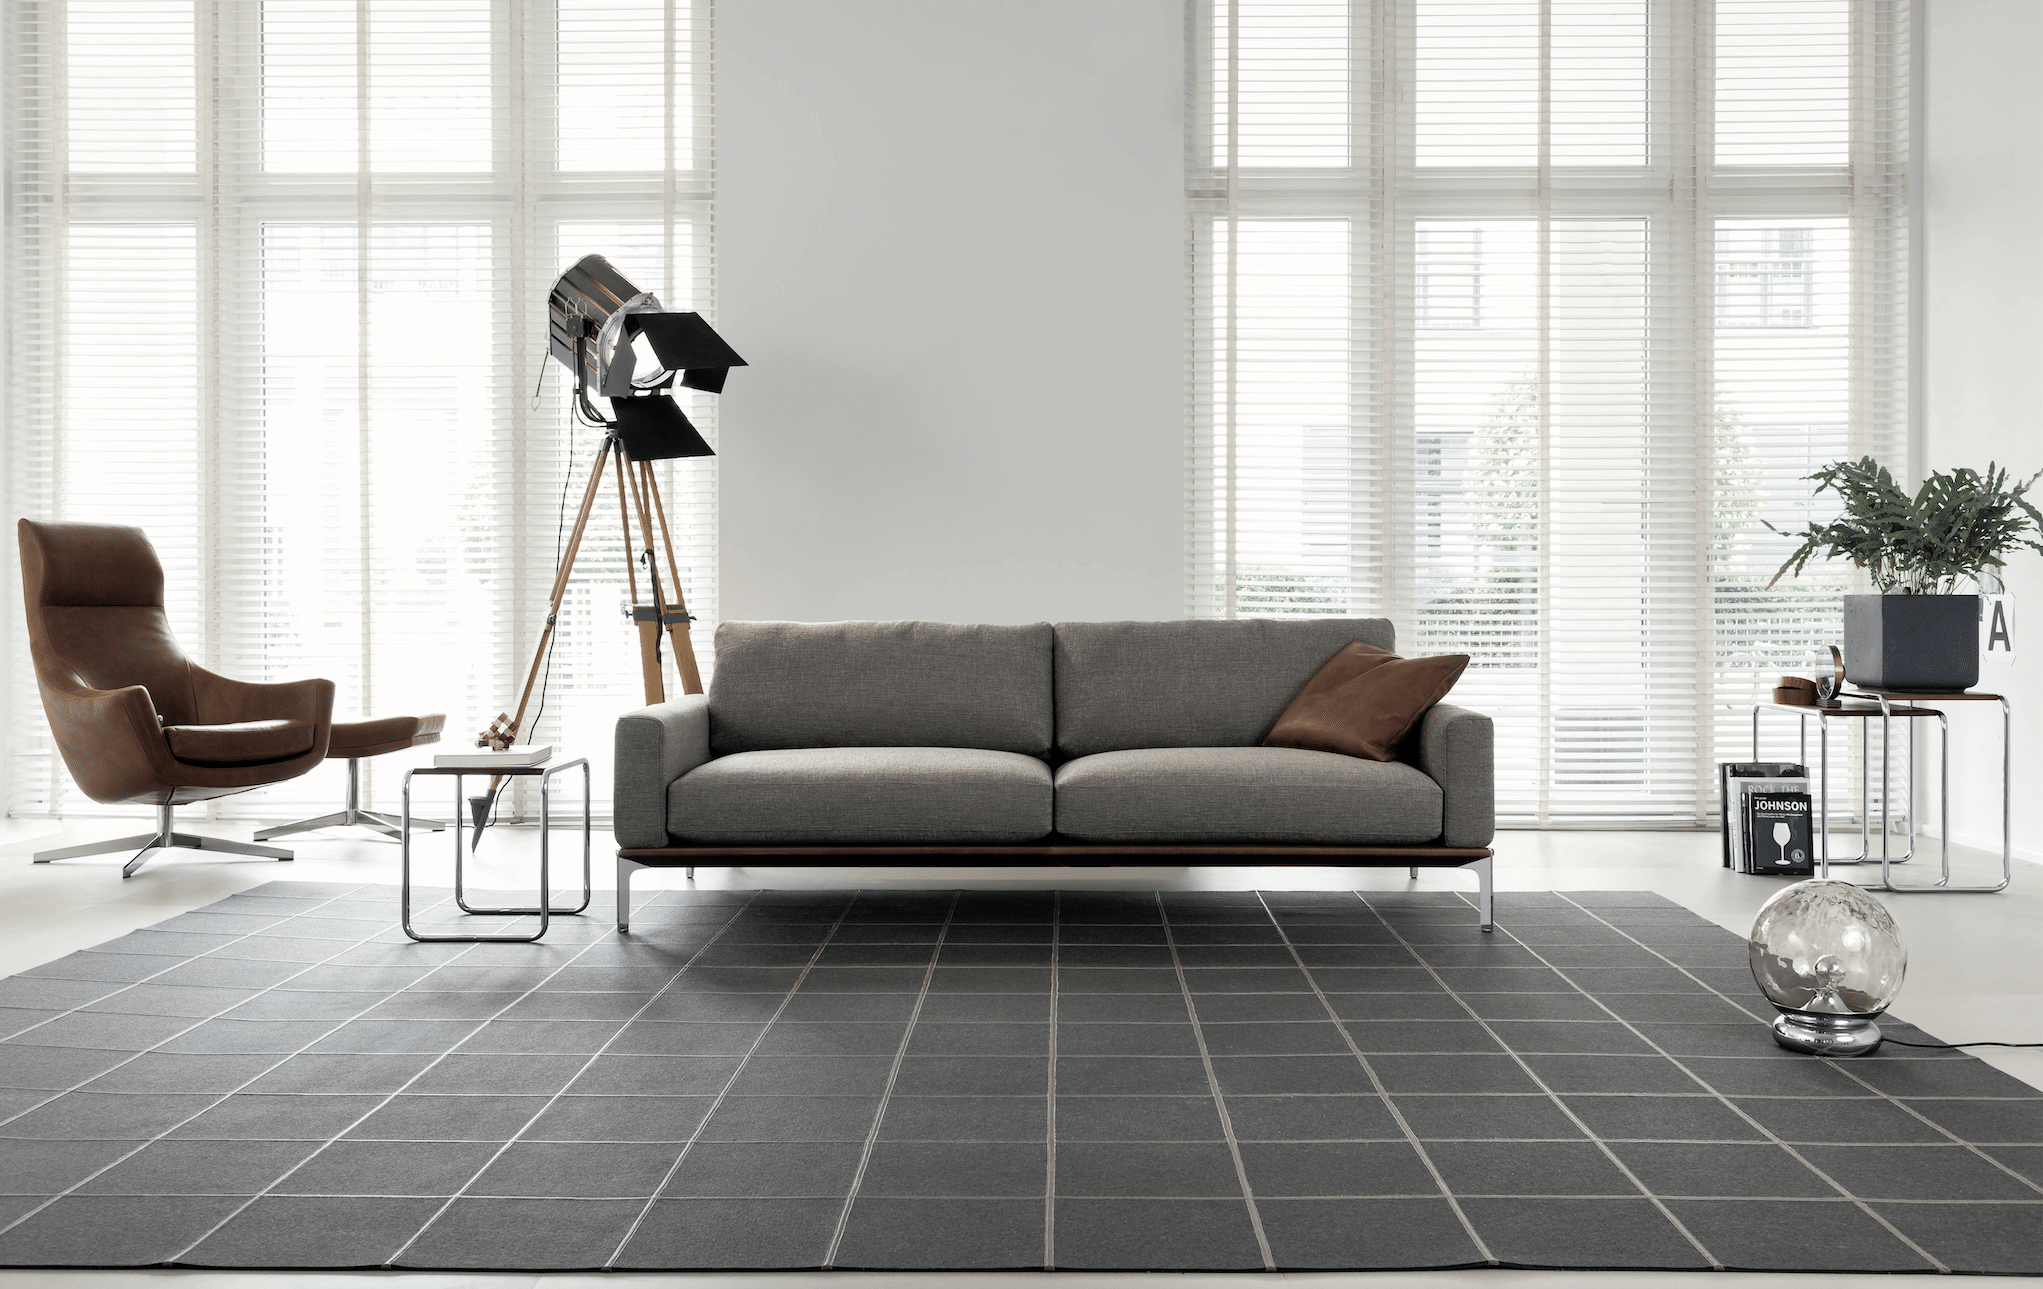 WOHNHAUS Grill & Ronacher zeigt das Sofa Spirit in grau von Bielefelder Werkstätten.